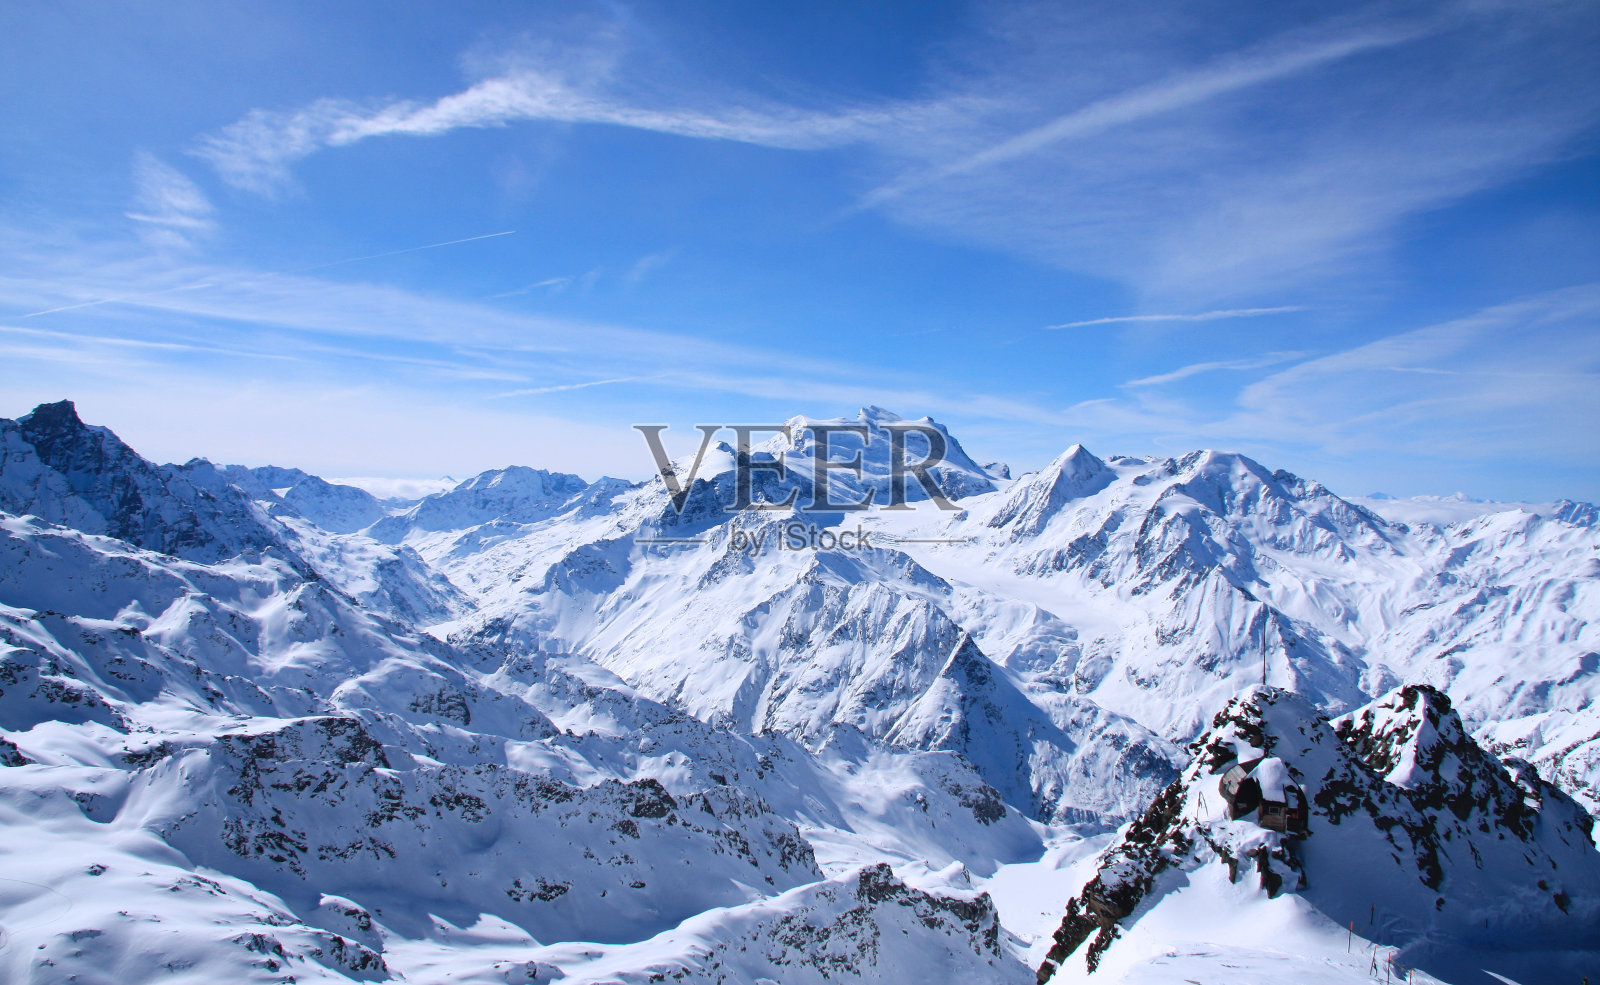 阿尔卑斯山的Verbier照片摄影图片